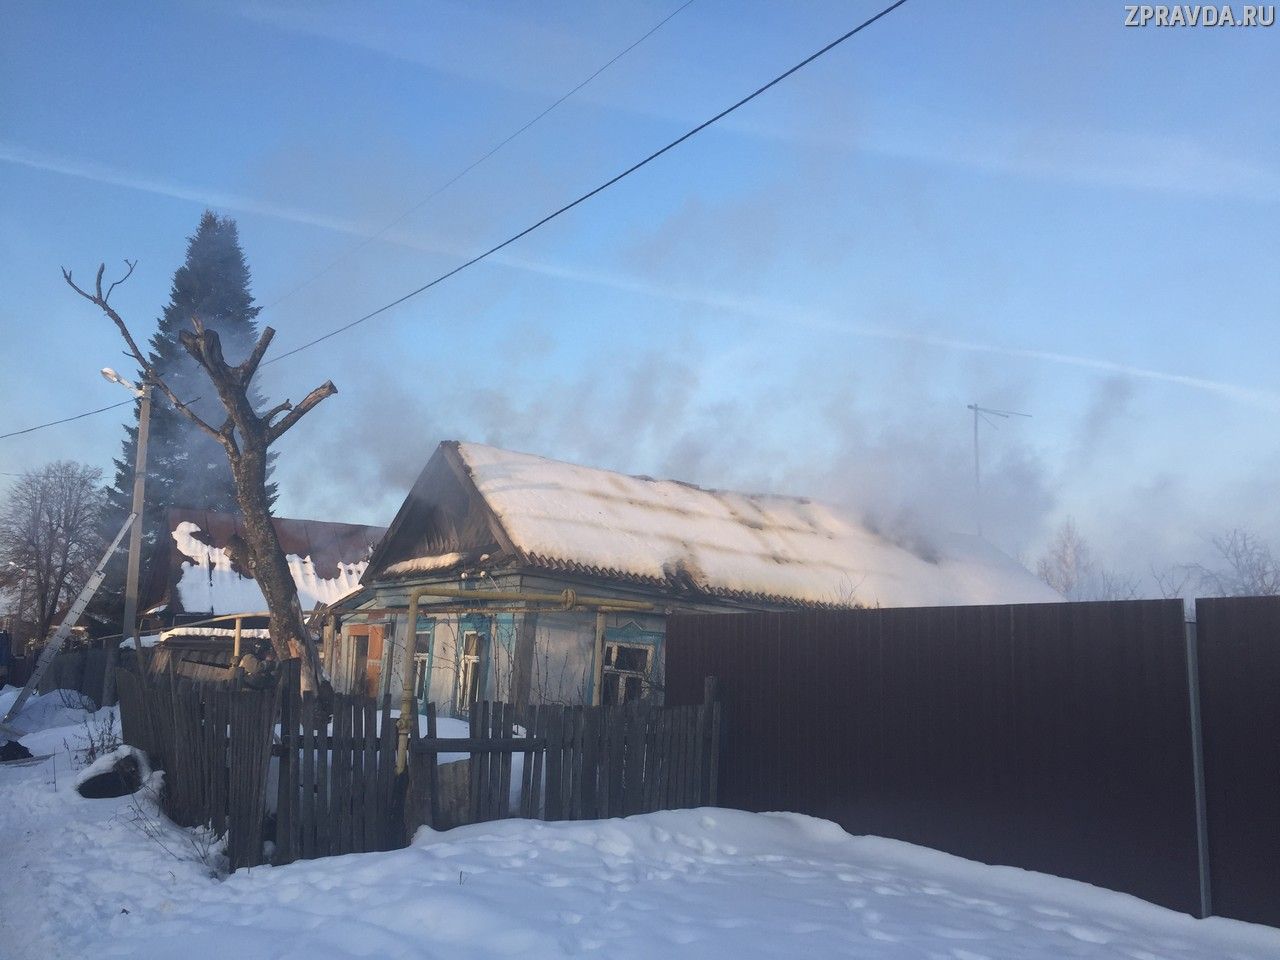 Хозяина частного дома в Зеленодольске спасли на пожаре